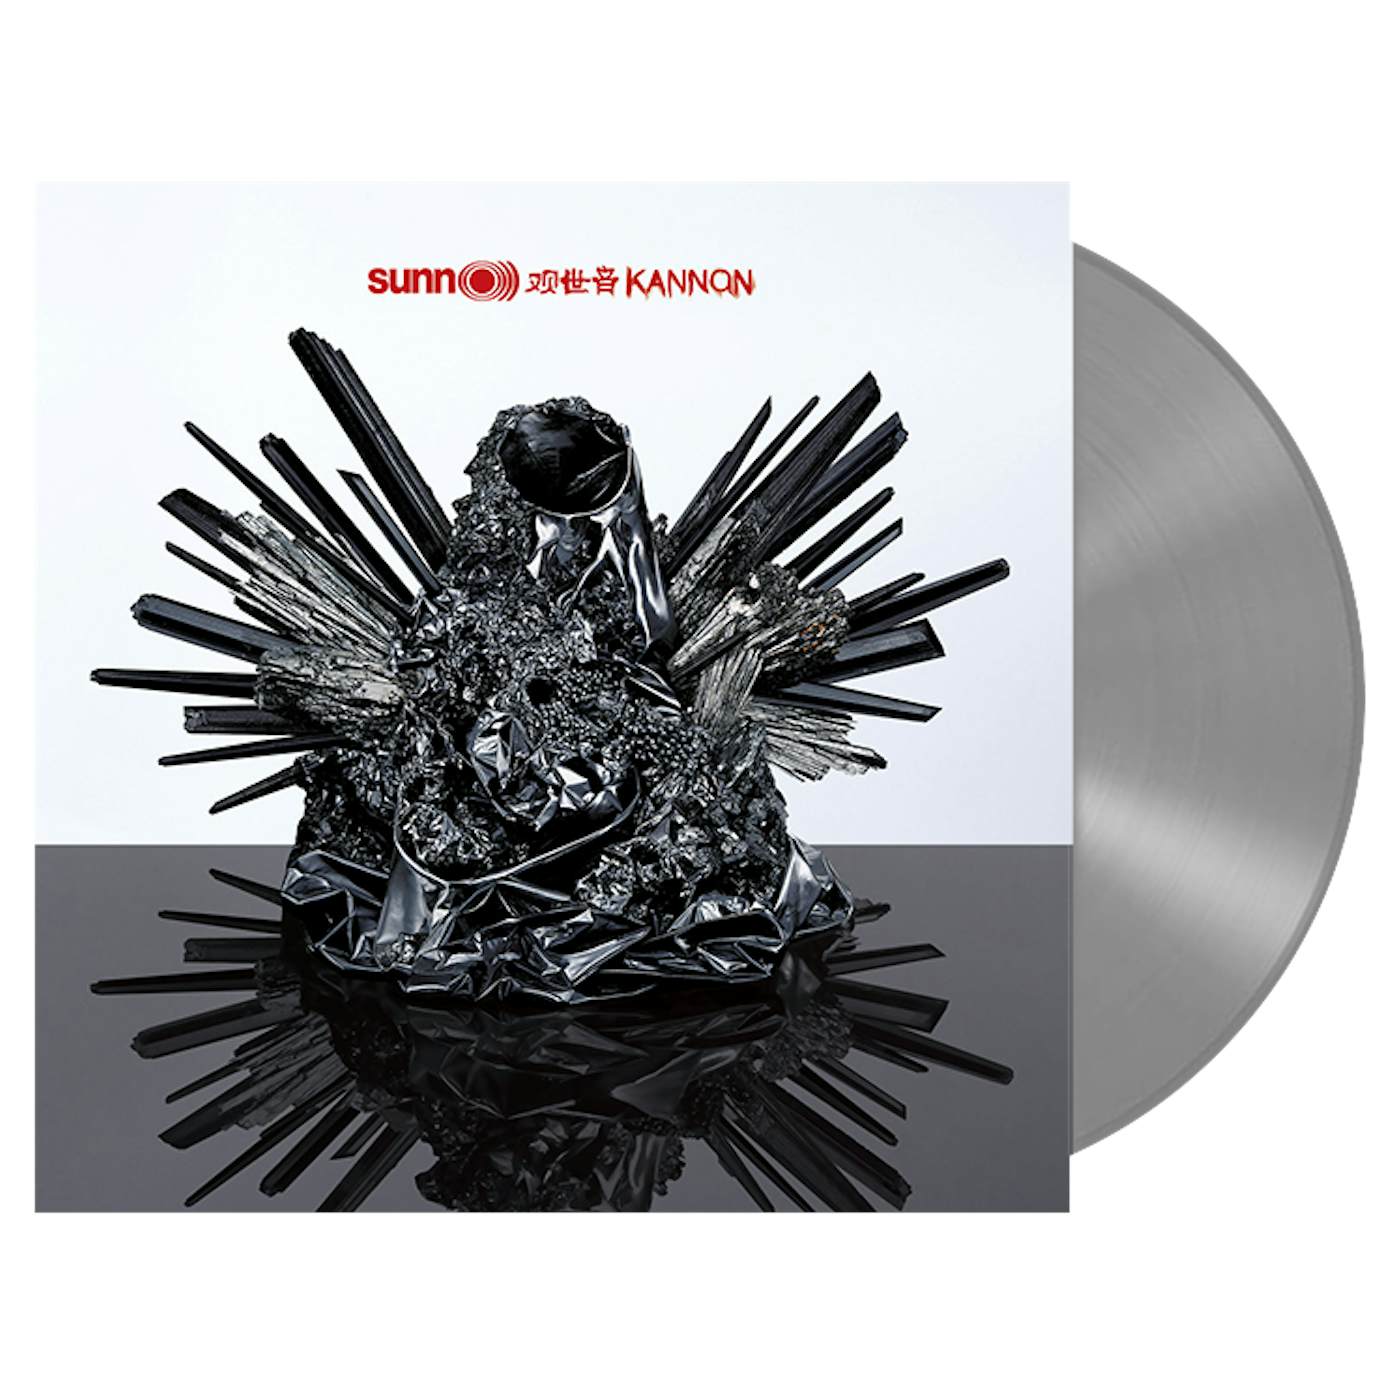 Sunn 0))) - 'Kannon' LP (Silver Vinyl)